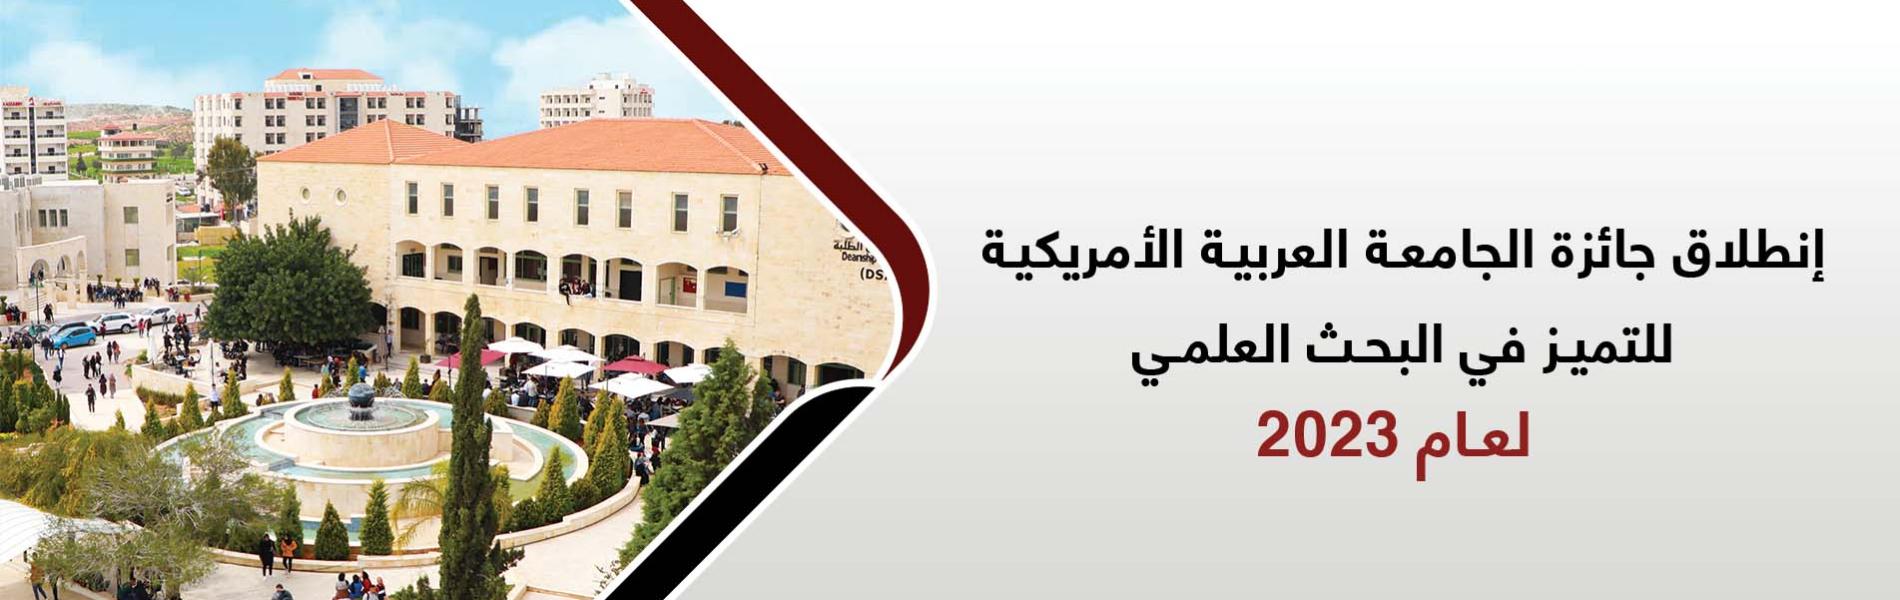 جائزة الجامعة العربية الامريكية للتميز في البحث العلمي للعام 2023